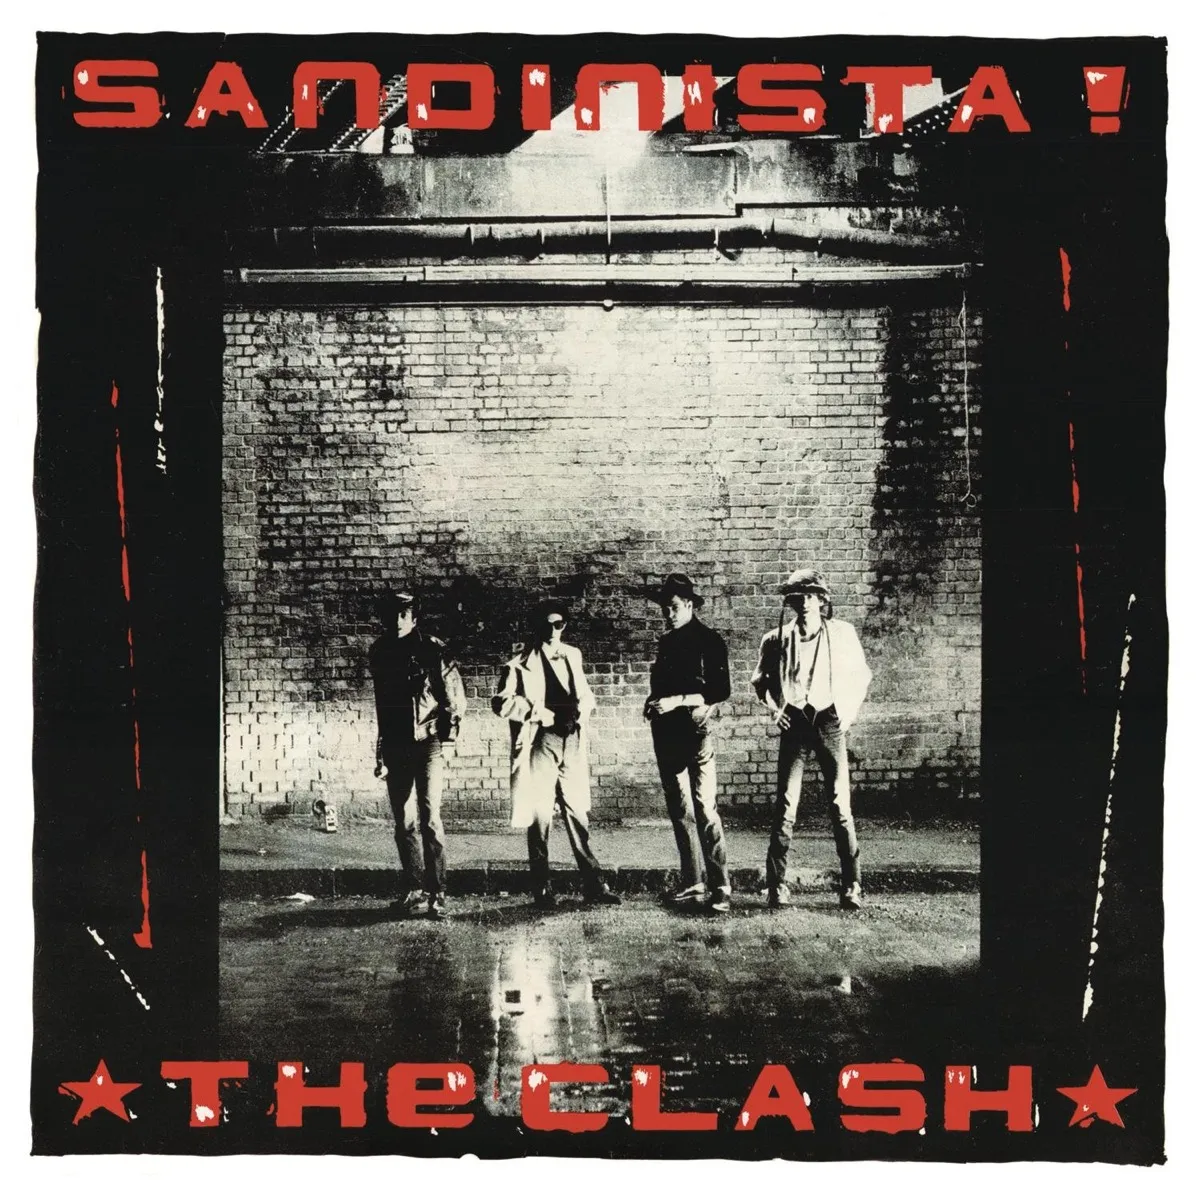 The Clash "Sandinista!" Album Cover